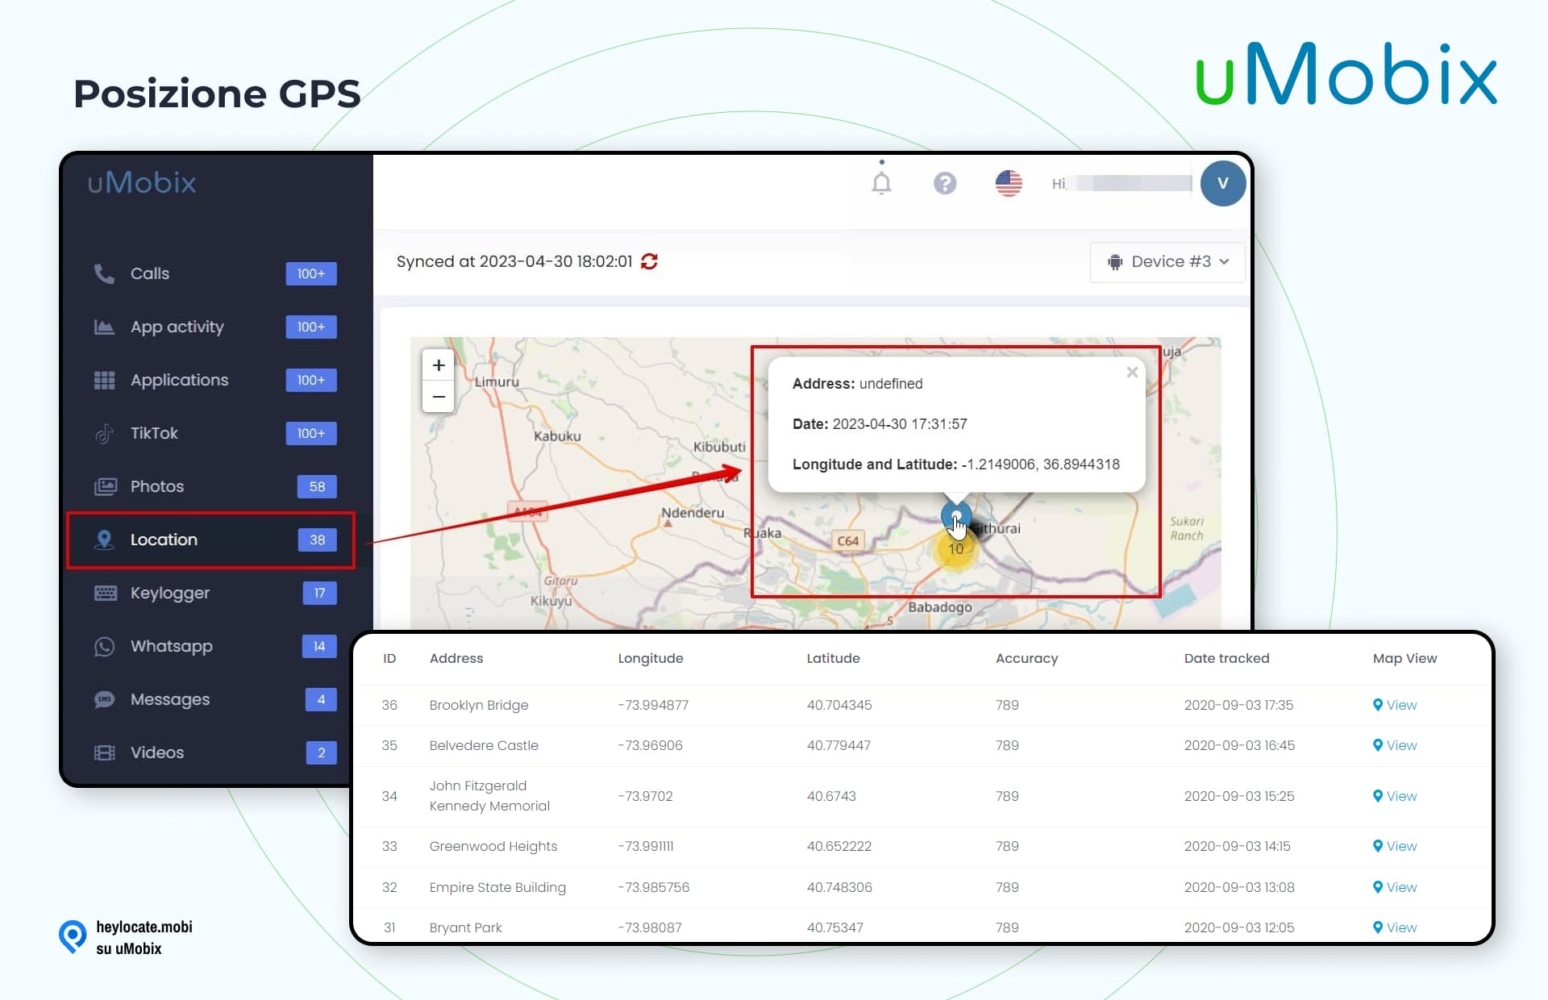 Una schermata della funzione di localizzazione GPS all'interno dell'interfaccia utente di uMobix. Mostra un pannello di navigazione a sinistra con la voce "Posizione" evidenziata. Sul lato destro è presente una mappa dettagliata che individua la posizione con le coordinate. Sotto la mappa, c'è una tabella con colonne per ID, Indirizzo, Longitudine, Latitudine, Precisione, Data tracciata e un'opzione per visualizzare la posizione sulla mappa, che illustra le precise capacità di monitoraggio della posizione dell'app.